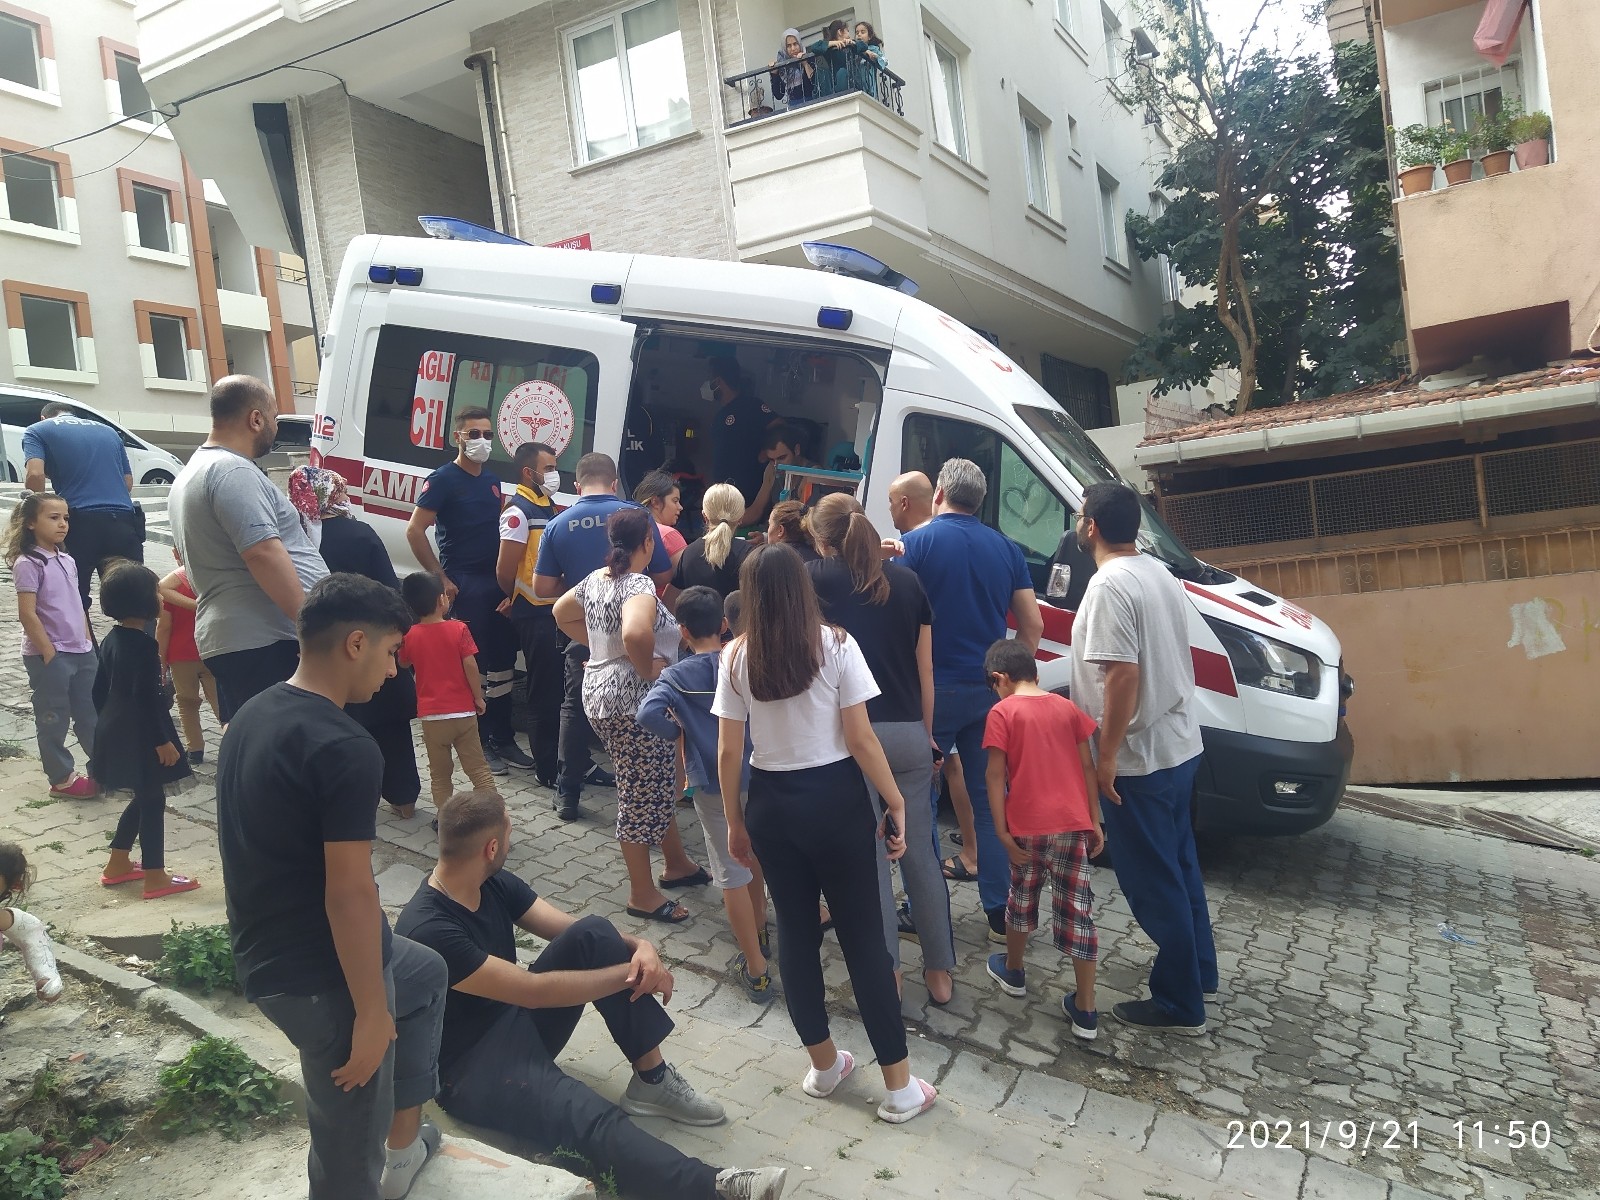 (Özel) Küçükçekmece’de genç kız yangında mahsur kaldı: 2 kişi de yaralandı #istanbul